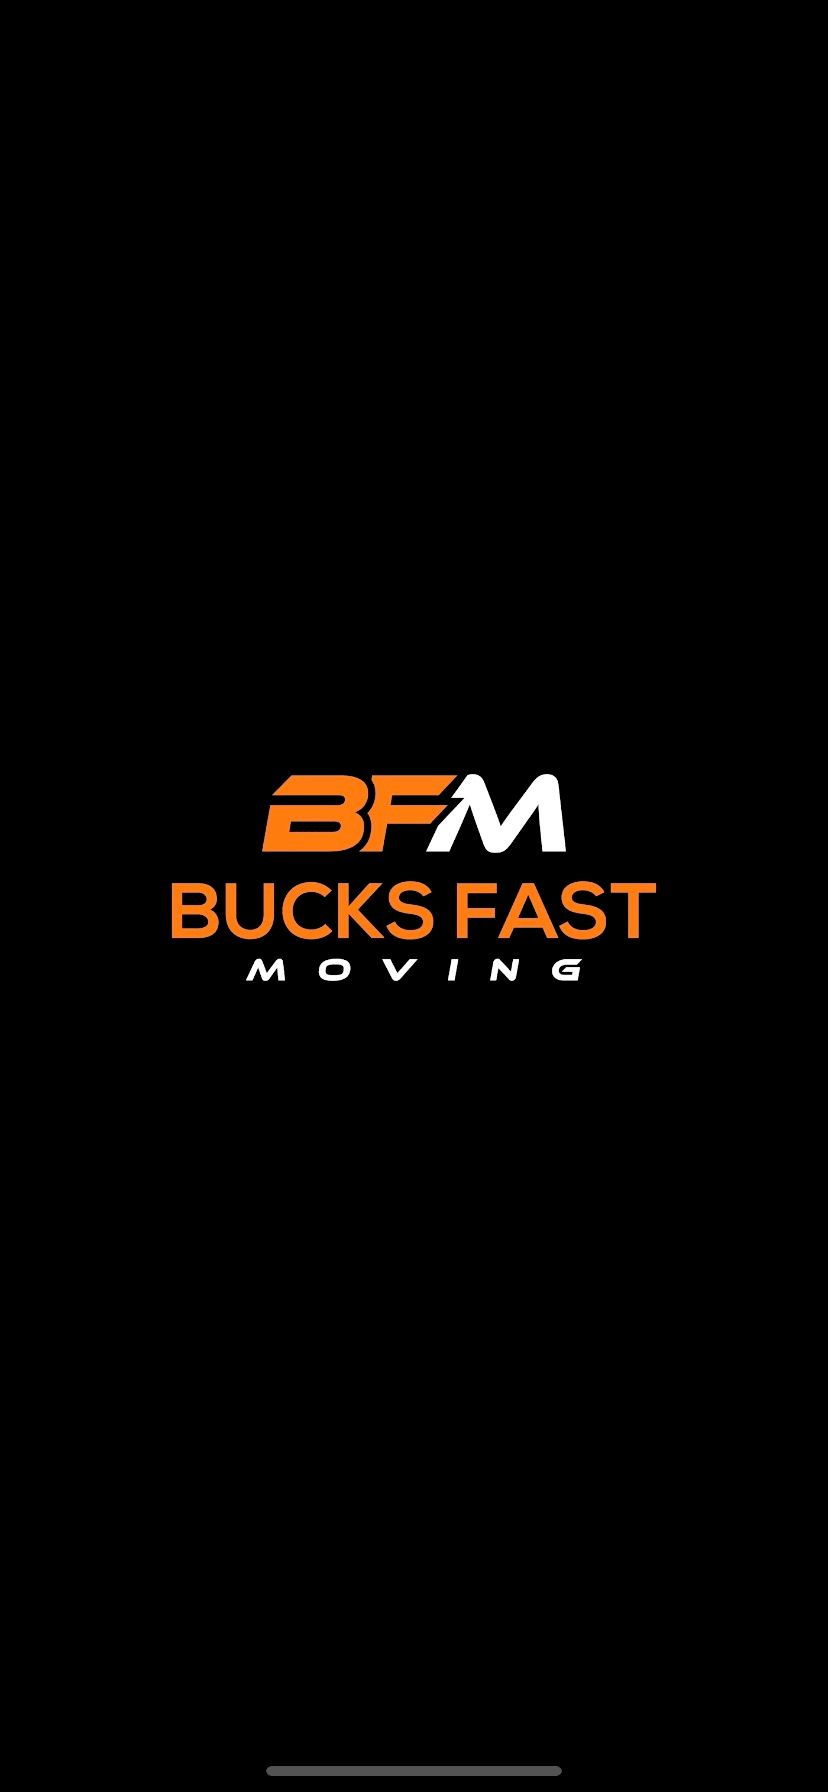 Bucks Fast Moving, LLC